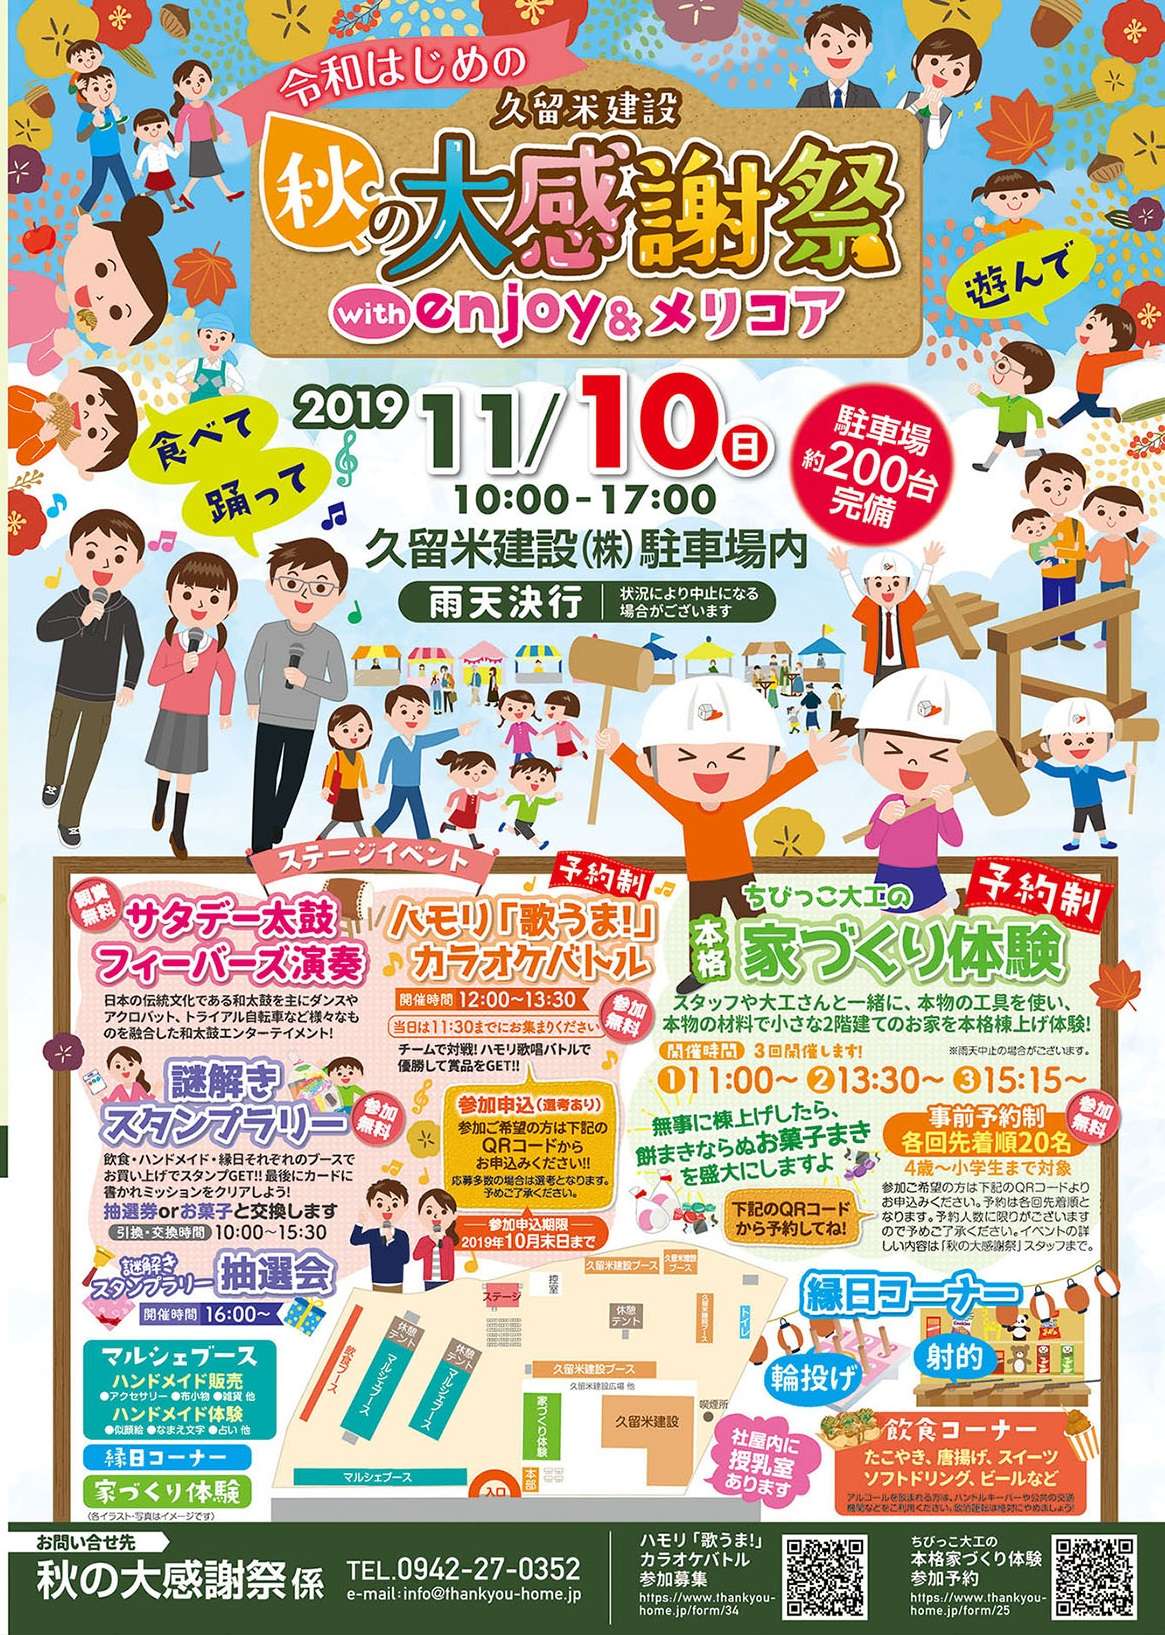 感謝祭 (かんしゃさい) - Japanese-English Dictionary - JapaneseClass.jp